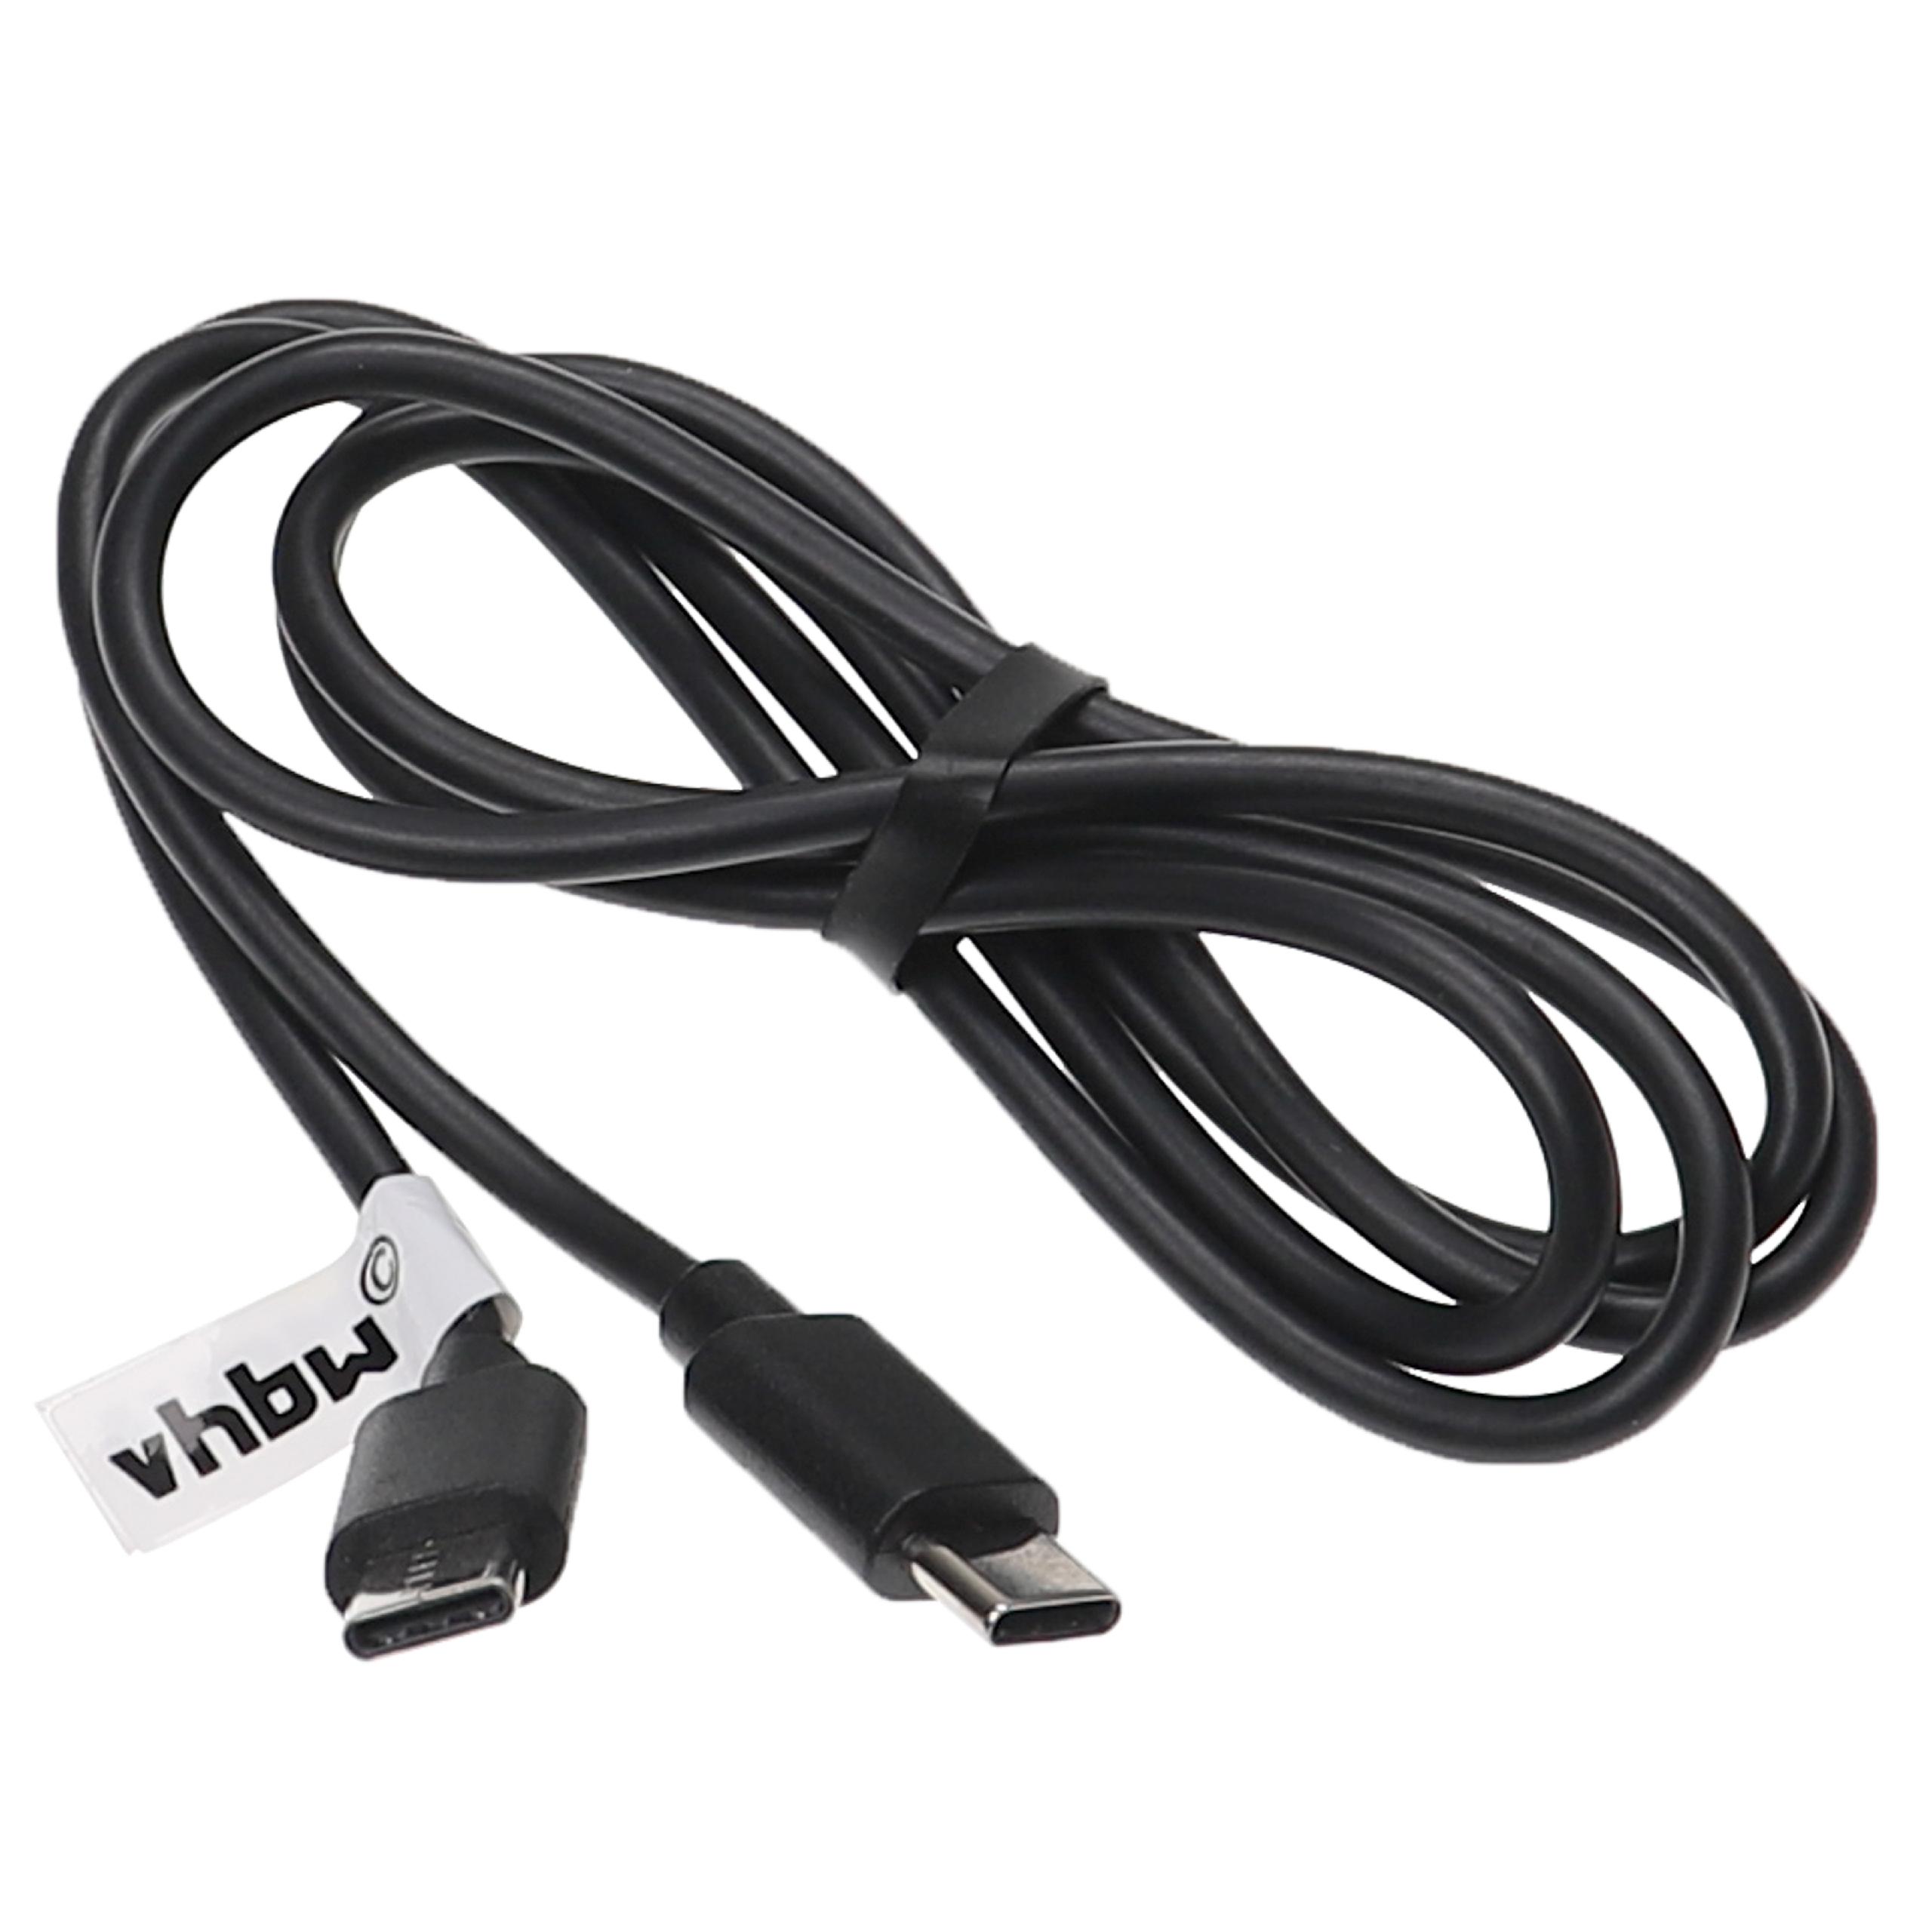 USB C Ladekabel passend für diverse Laptops, Tablets, Smartphones - USB C Kabel, 1 m Schwarz